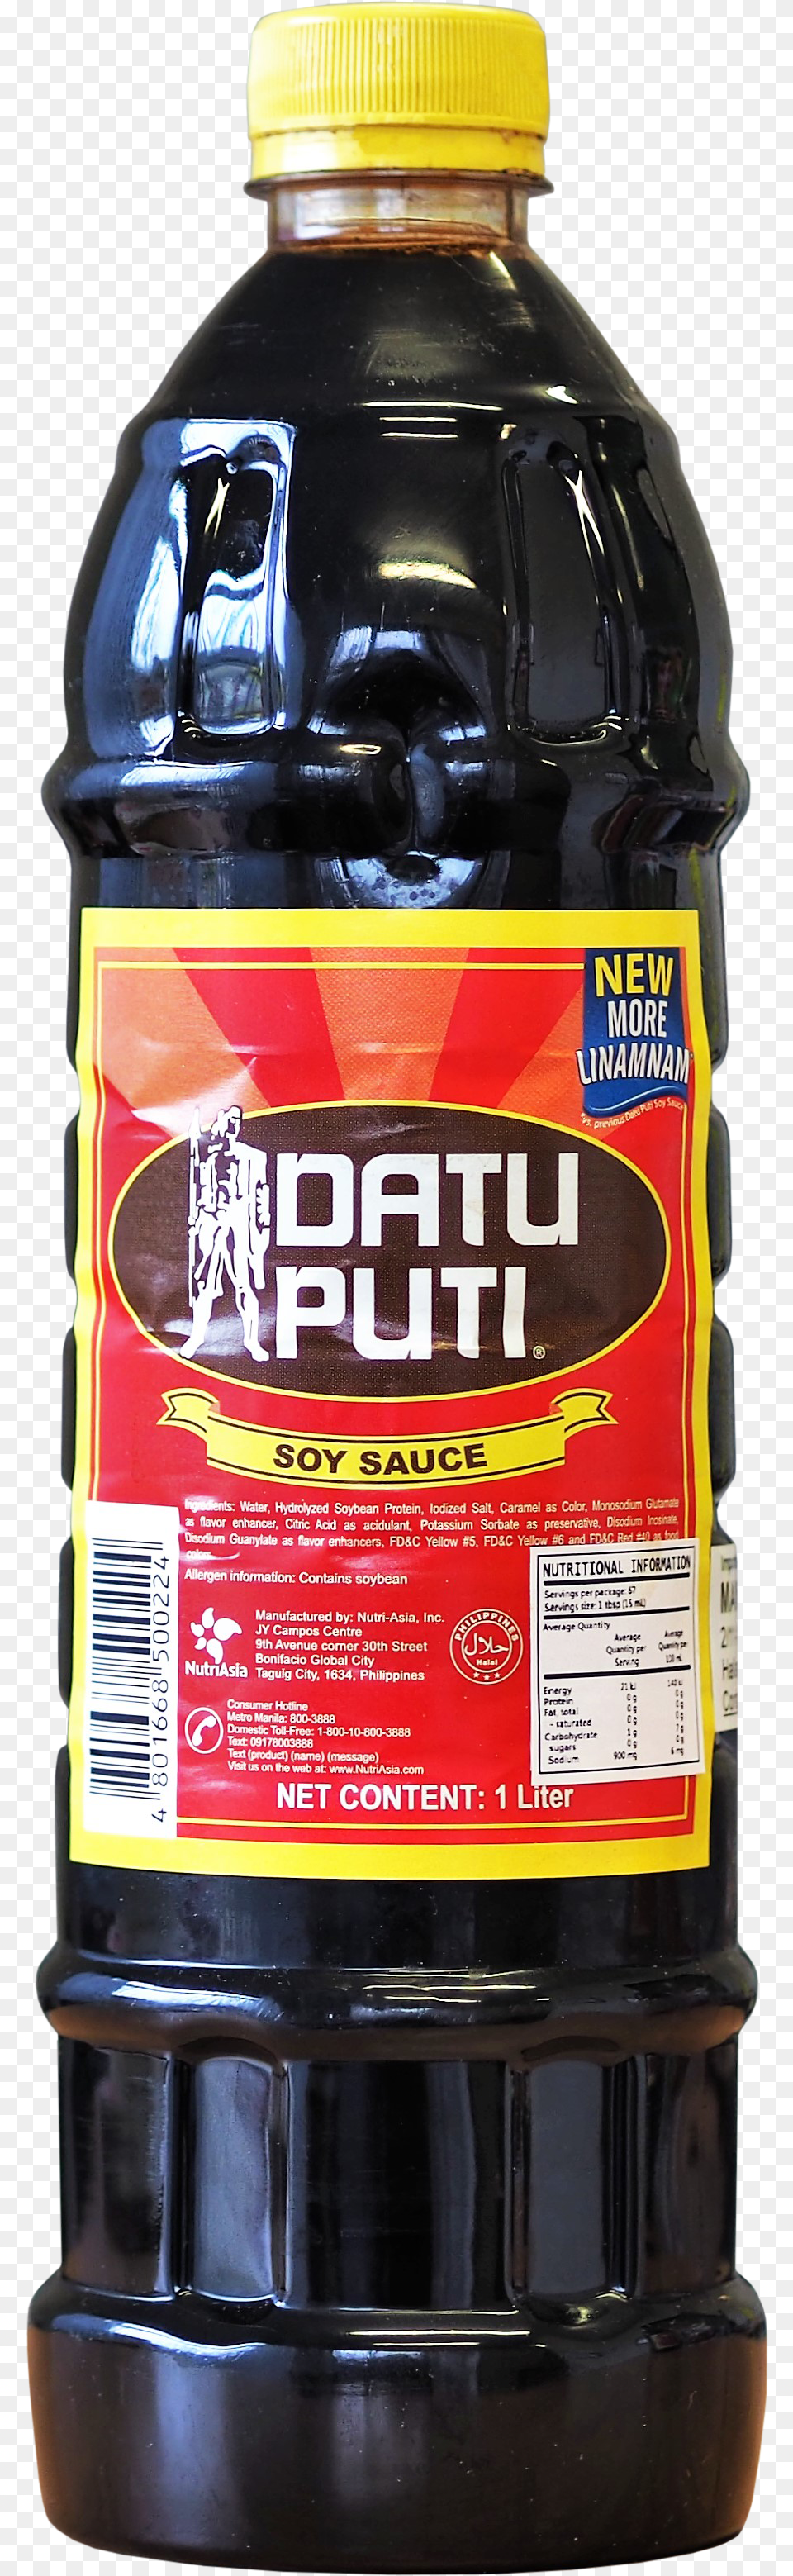 Datu Puti Soy Sauce, Food, Seasoning, Syrup, Bottle Free Transparent Png